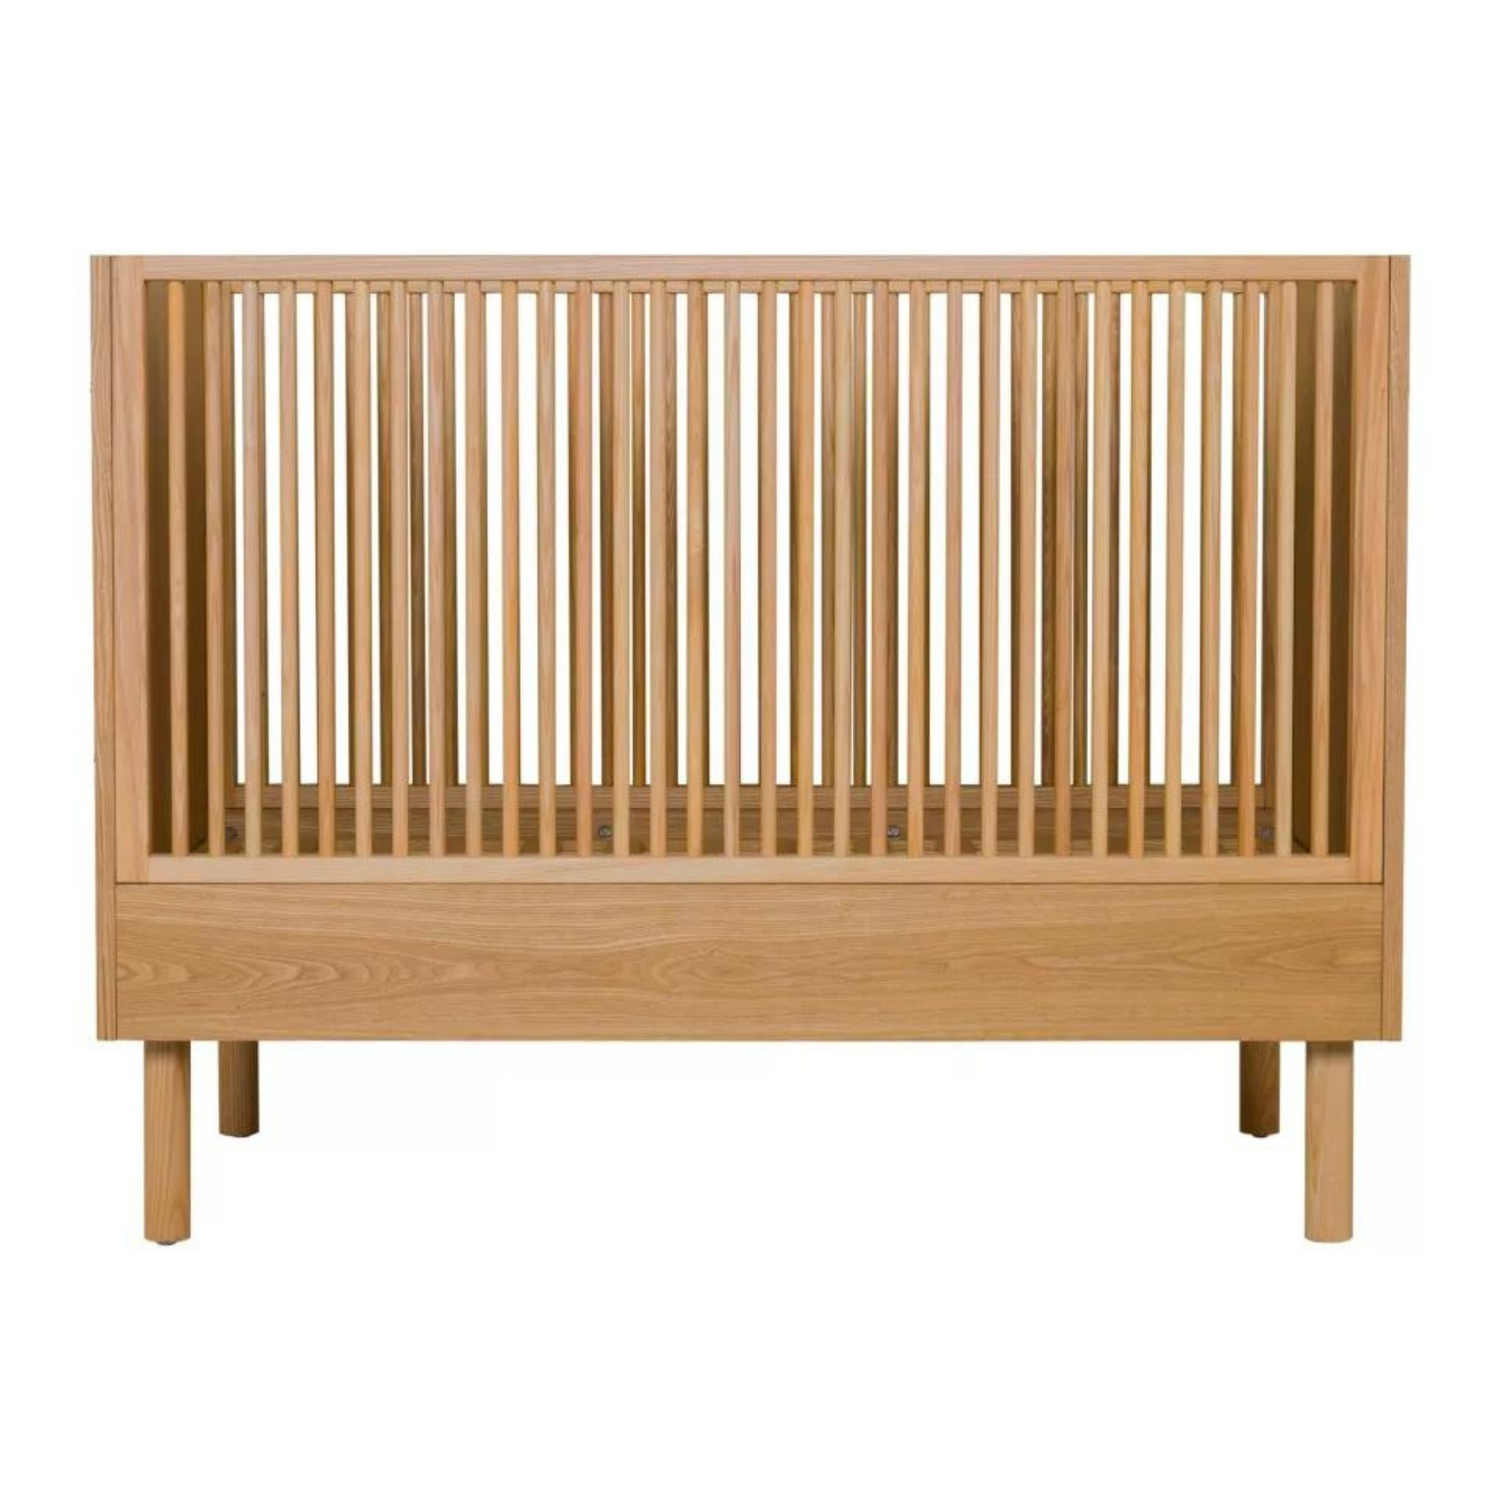 Quax baby crib Black Ash - 120 * 60 cm